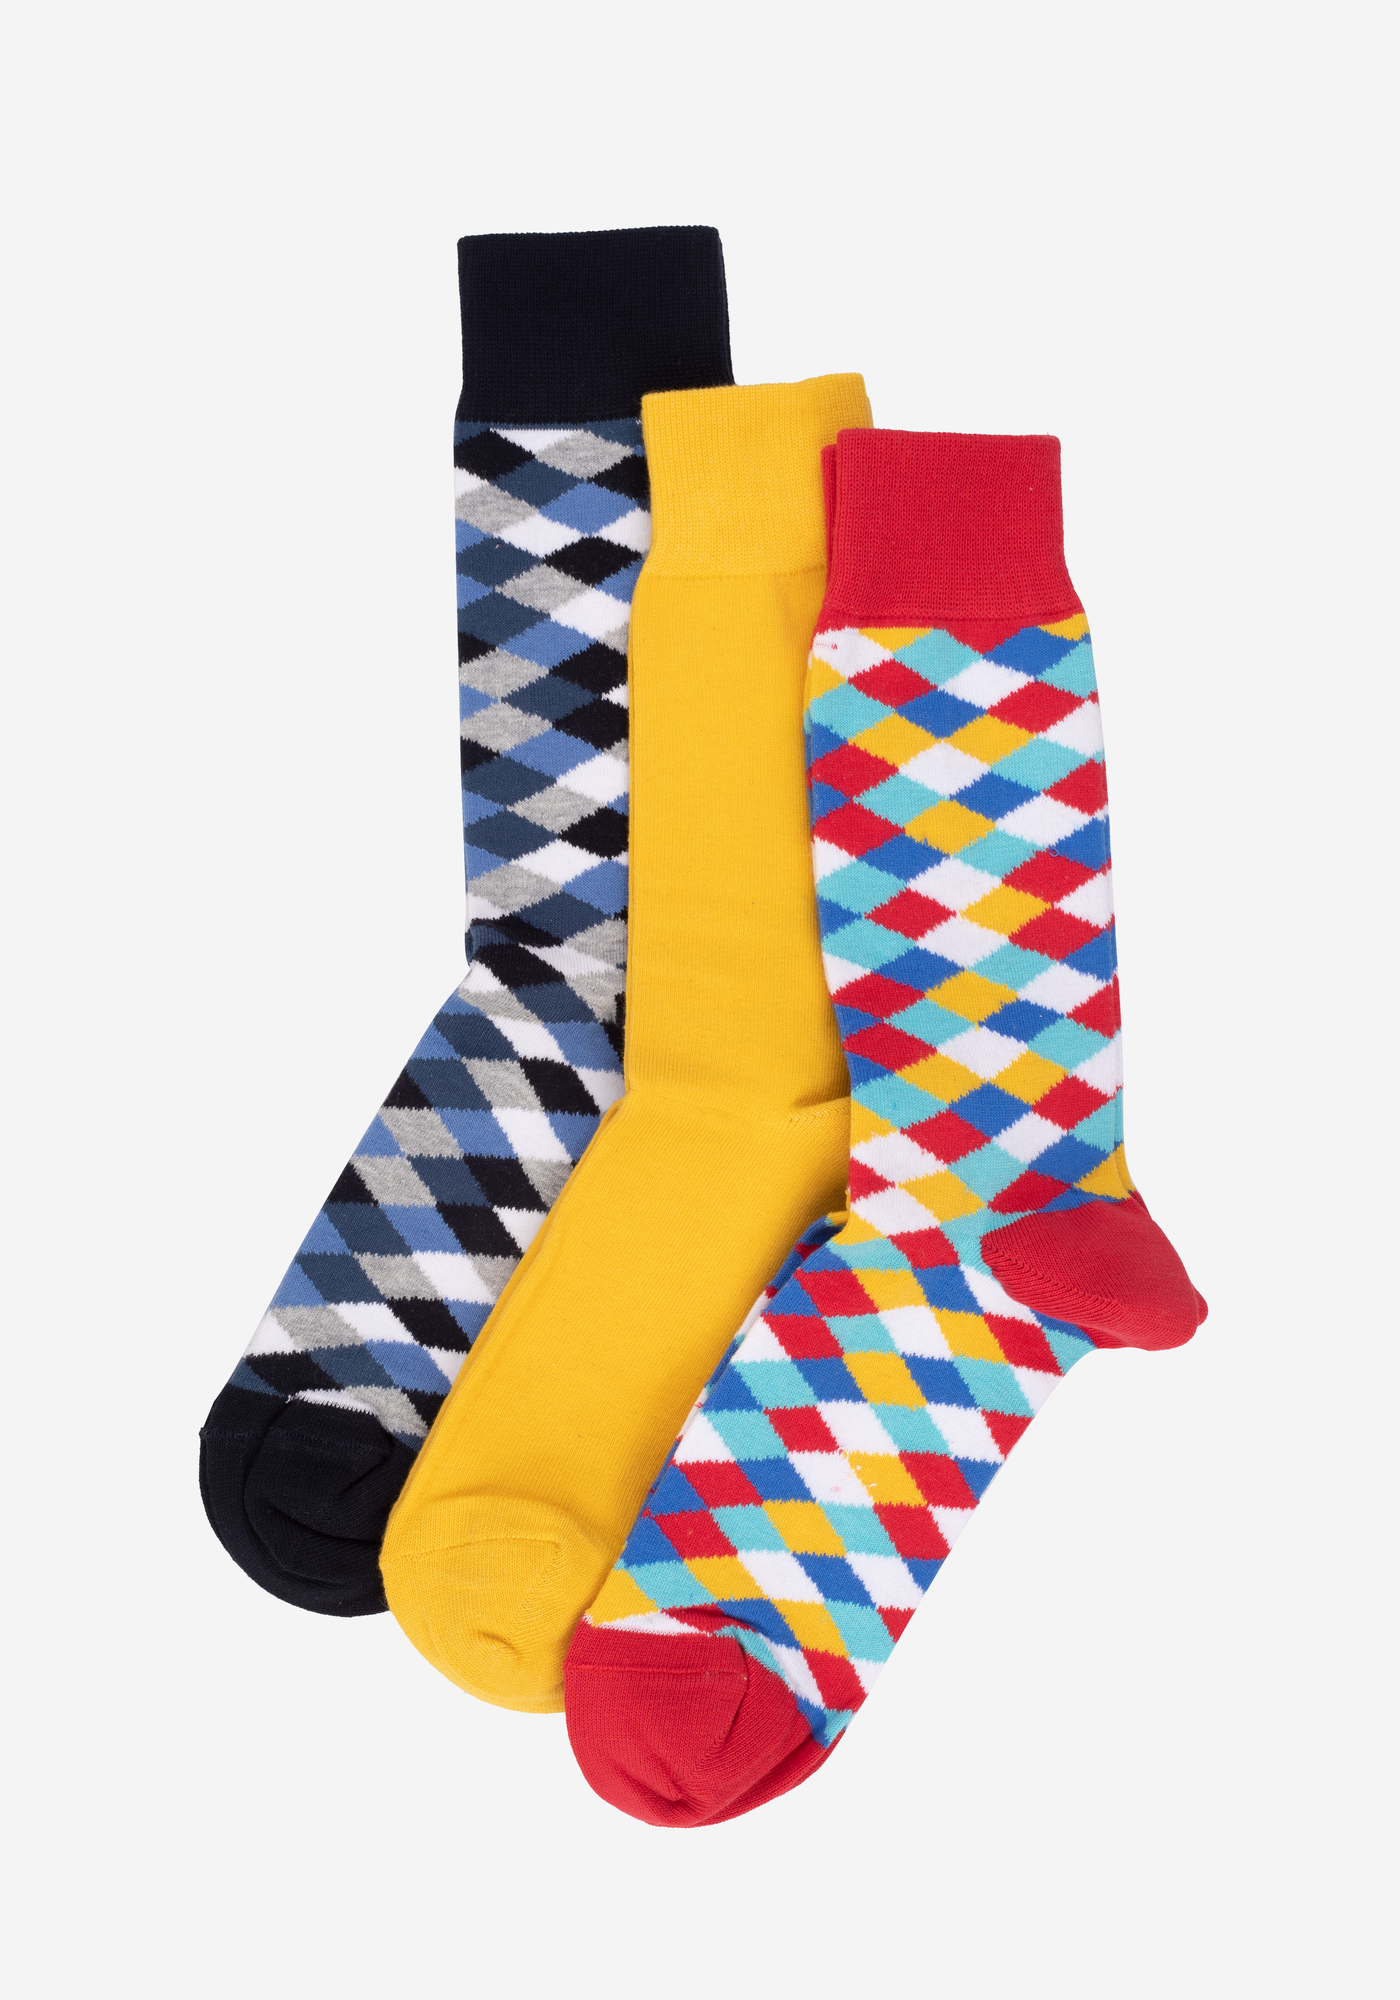 P3*1-840-17-3 / 3 Long Socks Pack